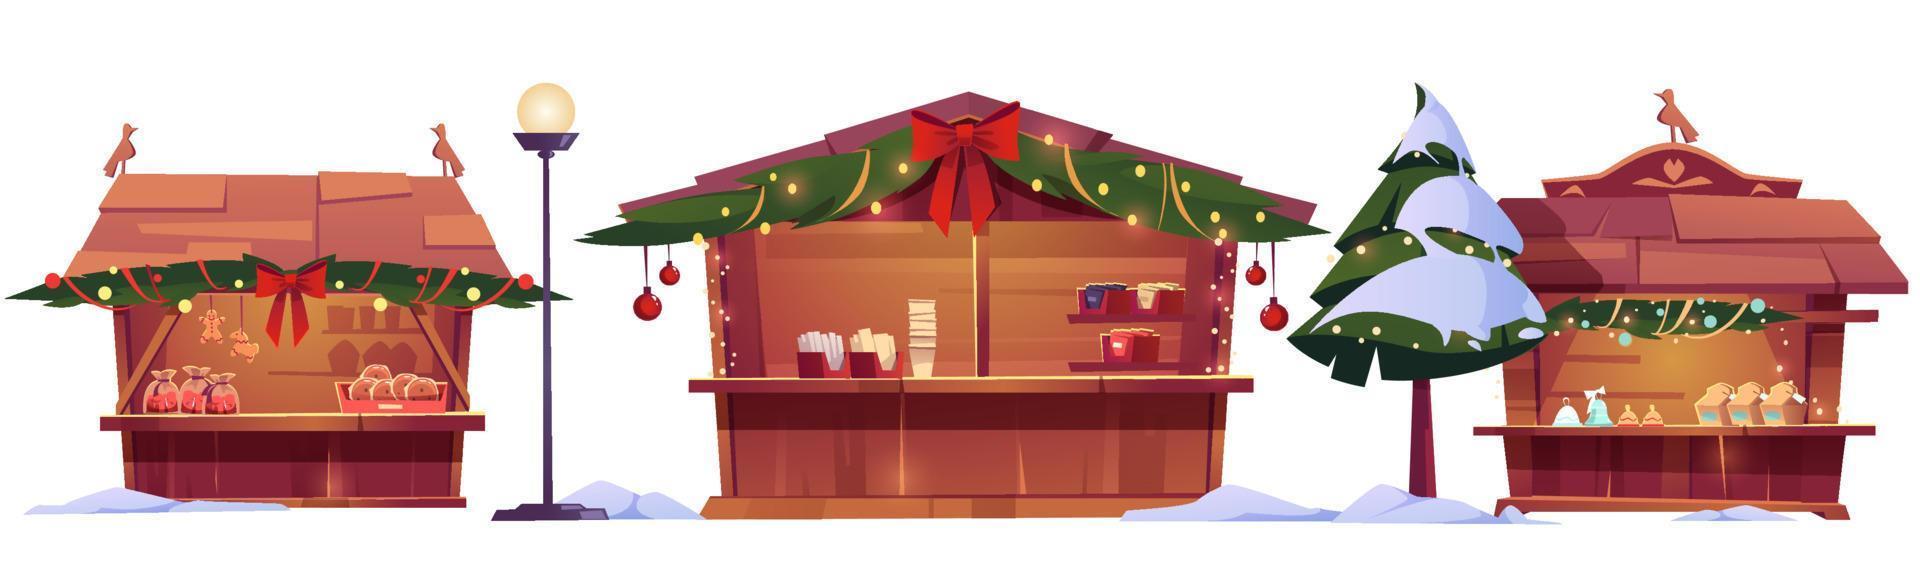 Christmas market stalls, street fair wooden booths vector